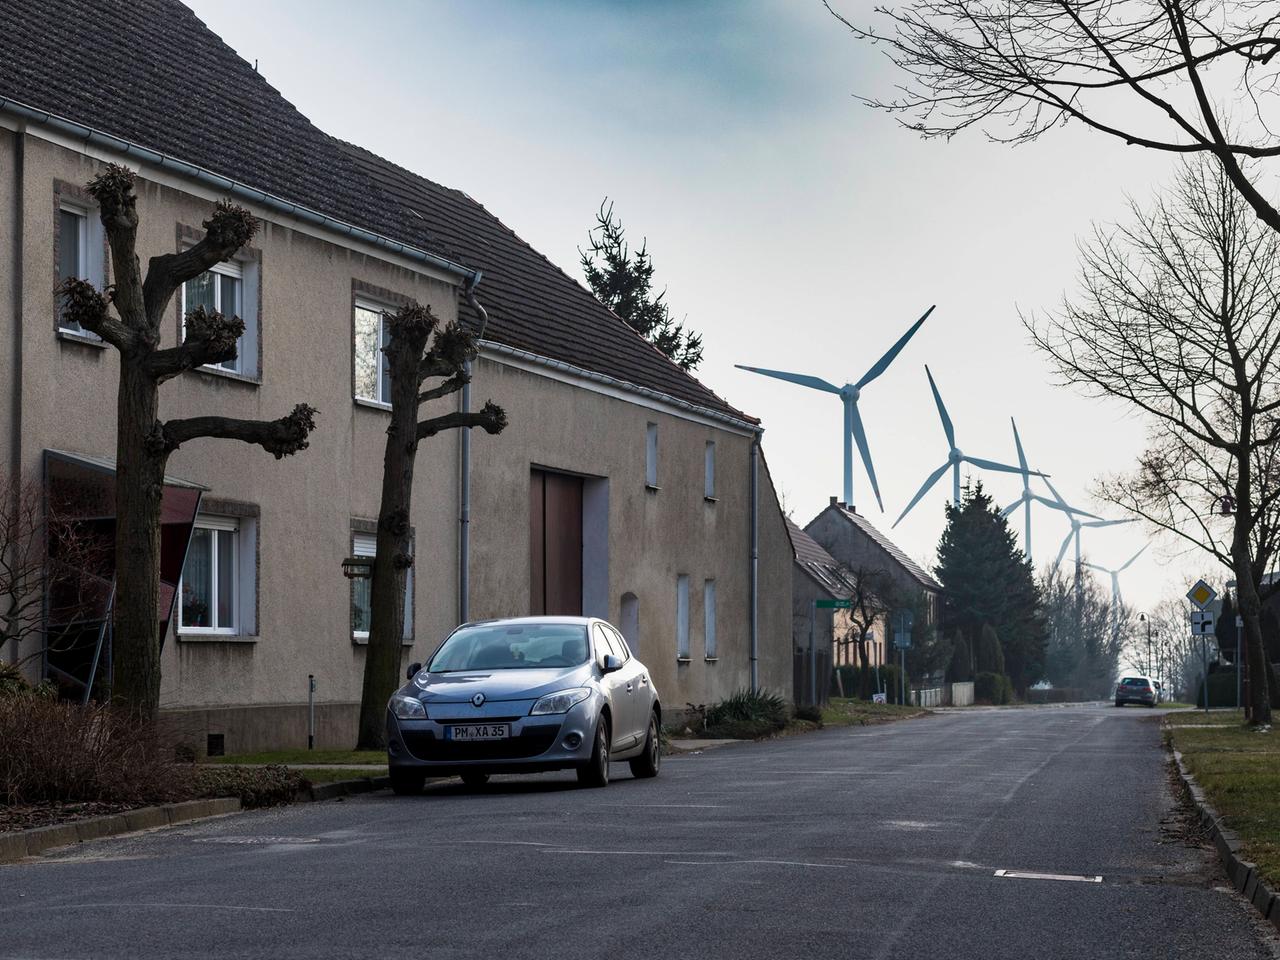 Eine Straße mit Wohnhäusern, Bäumen und einen Auto. Im Hintergrund sind mehrere Windkraftanlagen zu sehen. Es handelt sich um den Ort Feldheim im brandenburgischen Fläming, der sich selbst aus erneuerbarer Energie autark versorgt.